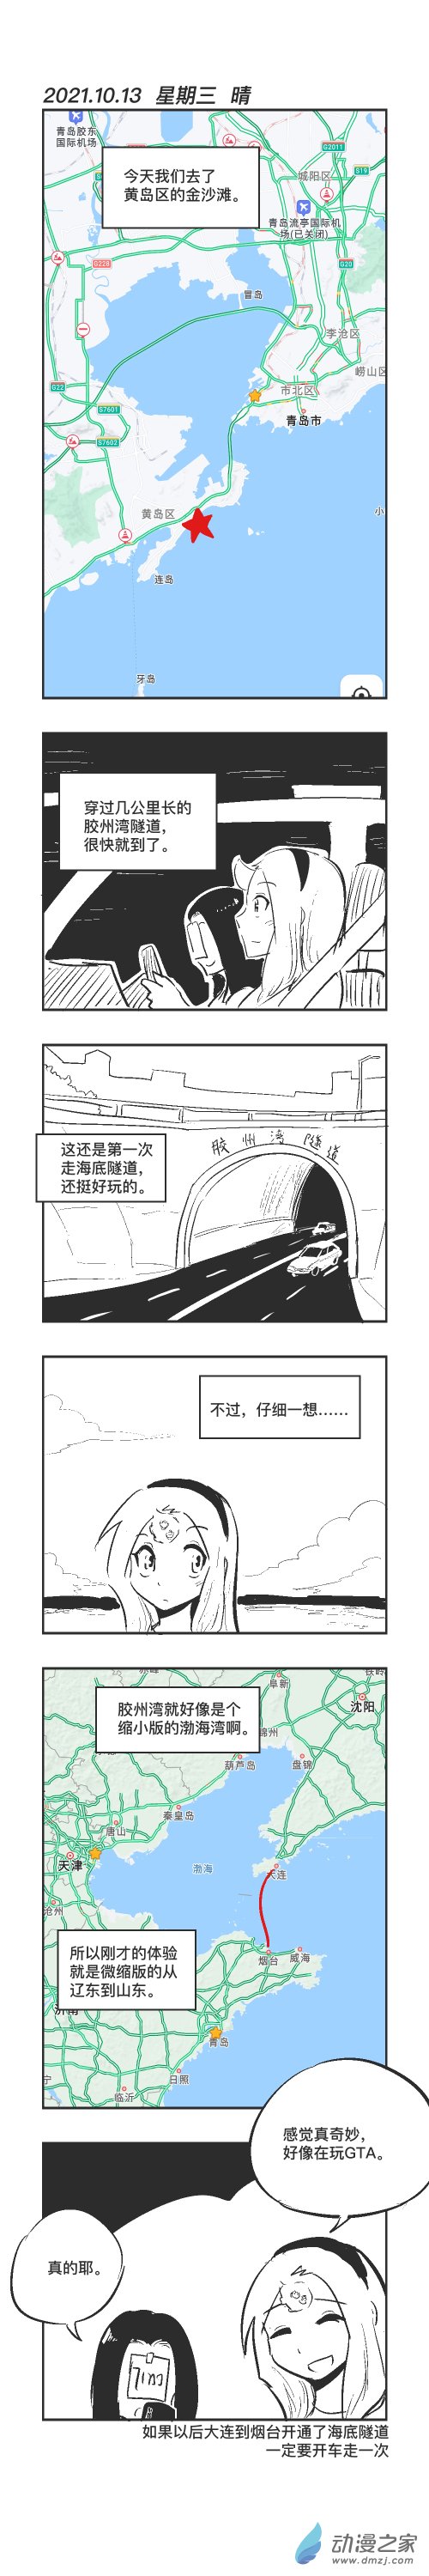 乌贼ichabod日更计划 - 0113 海底隧道 - 1